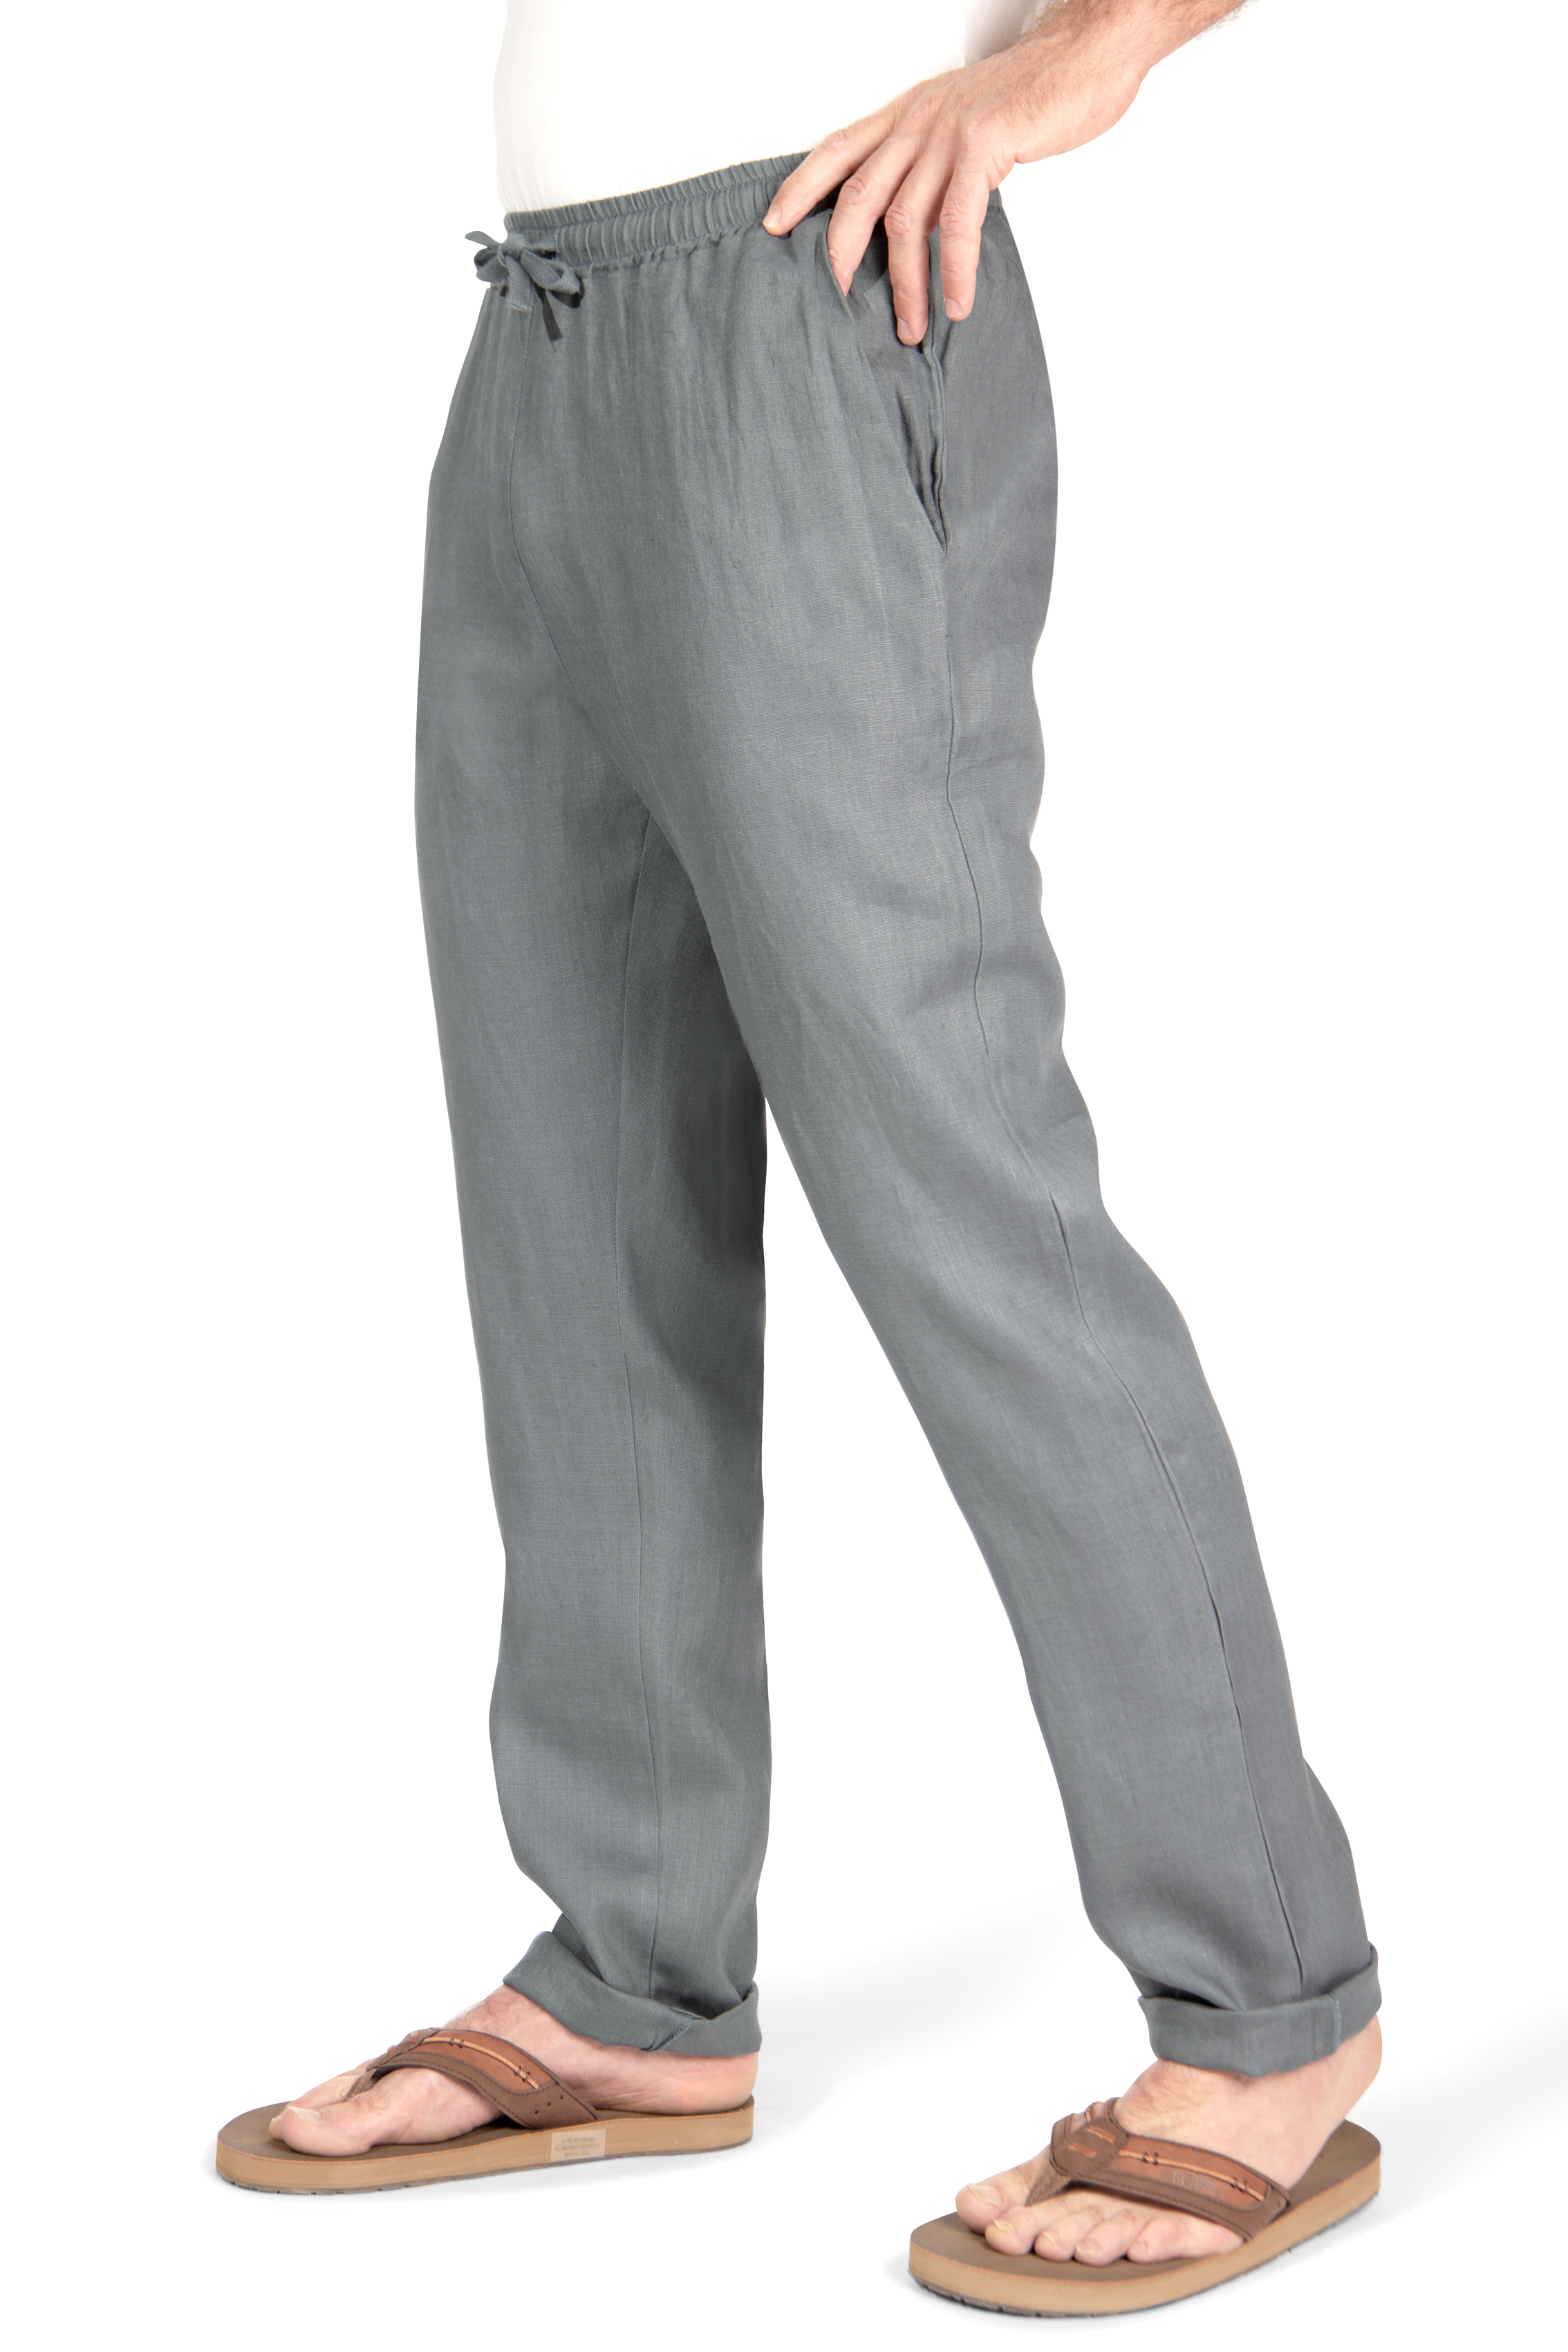 Mens Linen Pants Lightweight Elastic Waist Drawstring Pants Summer